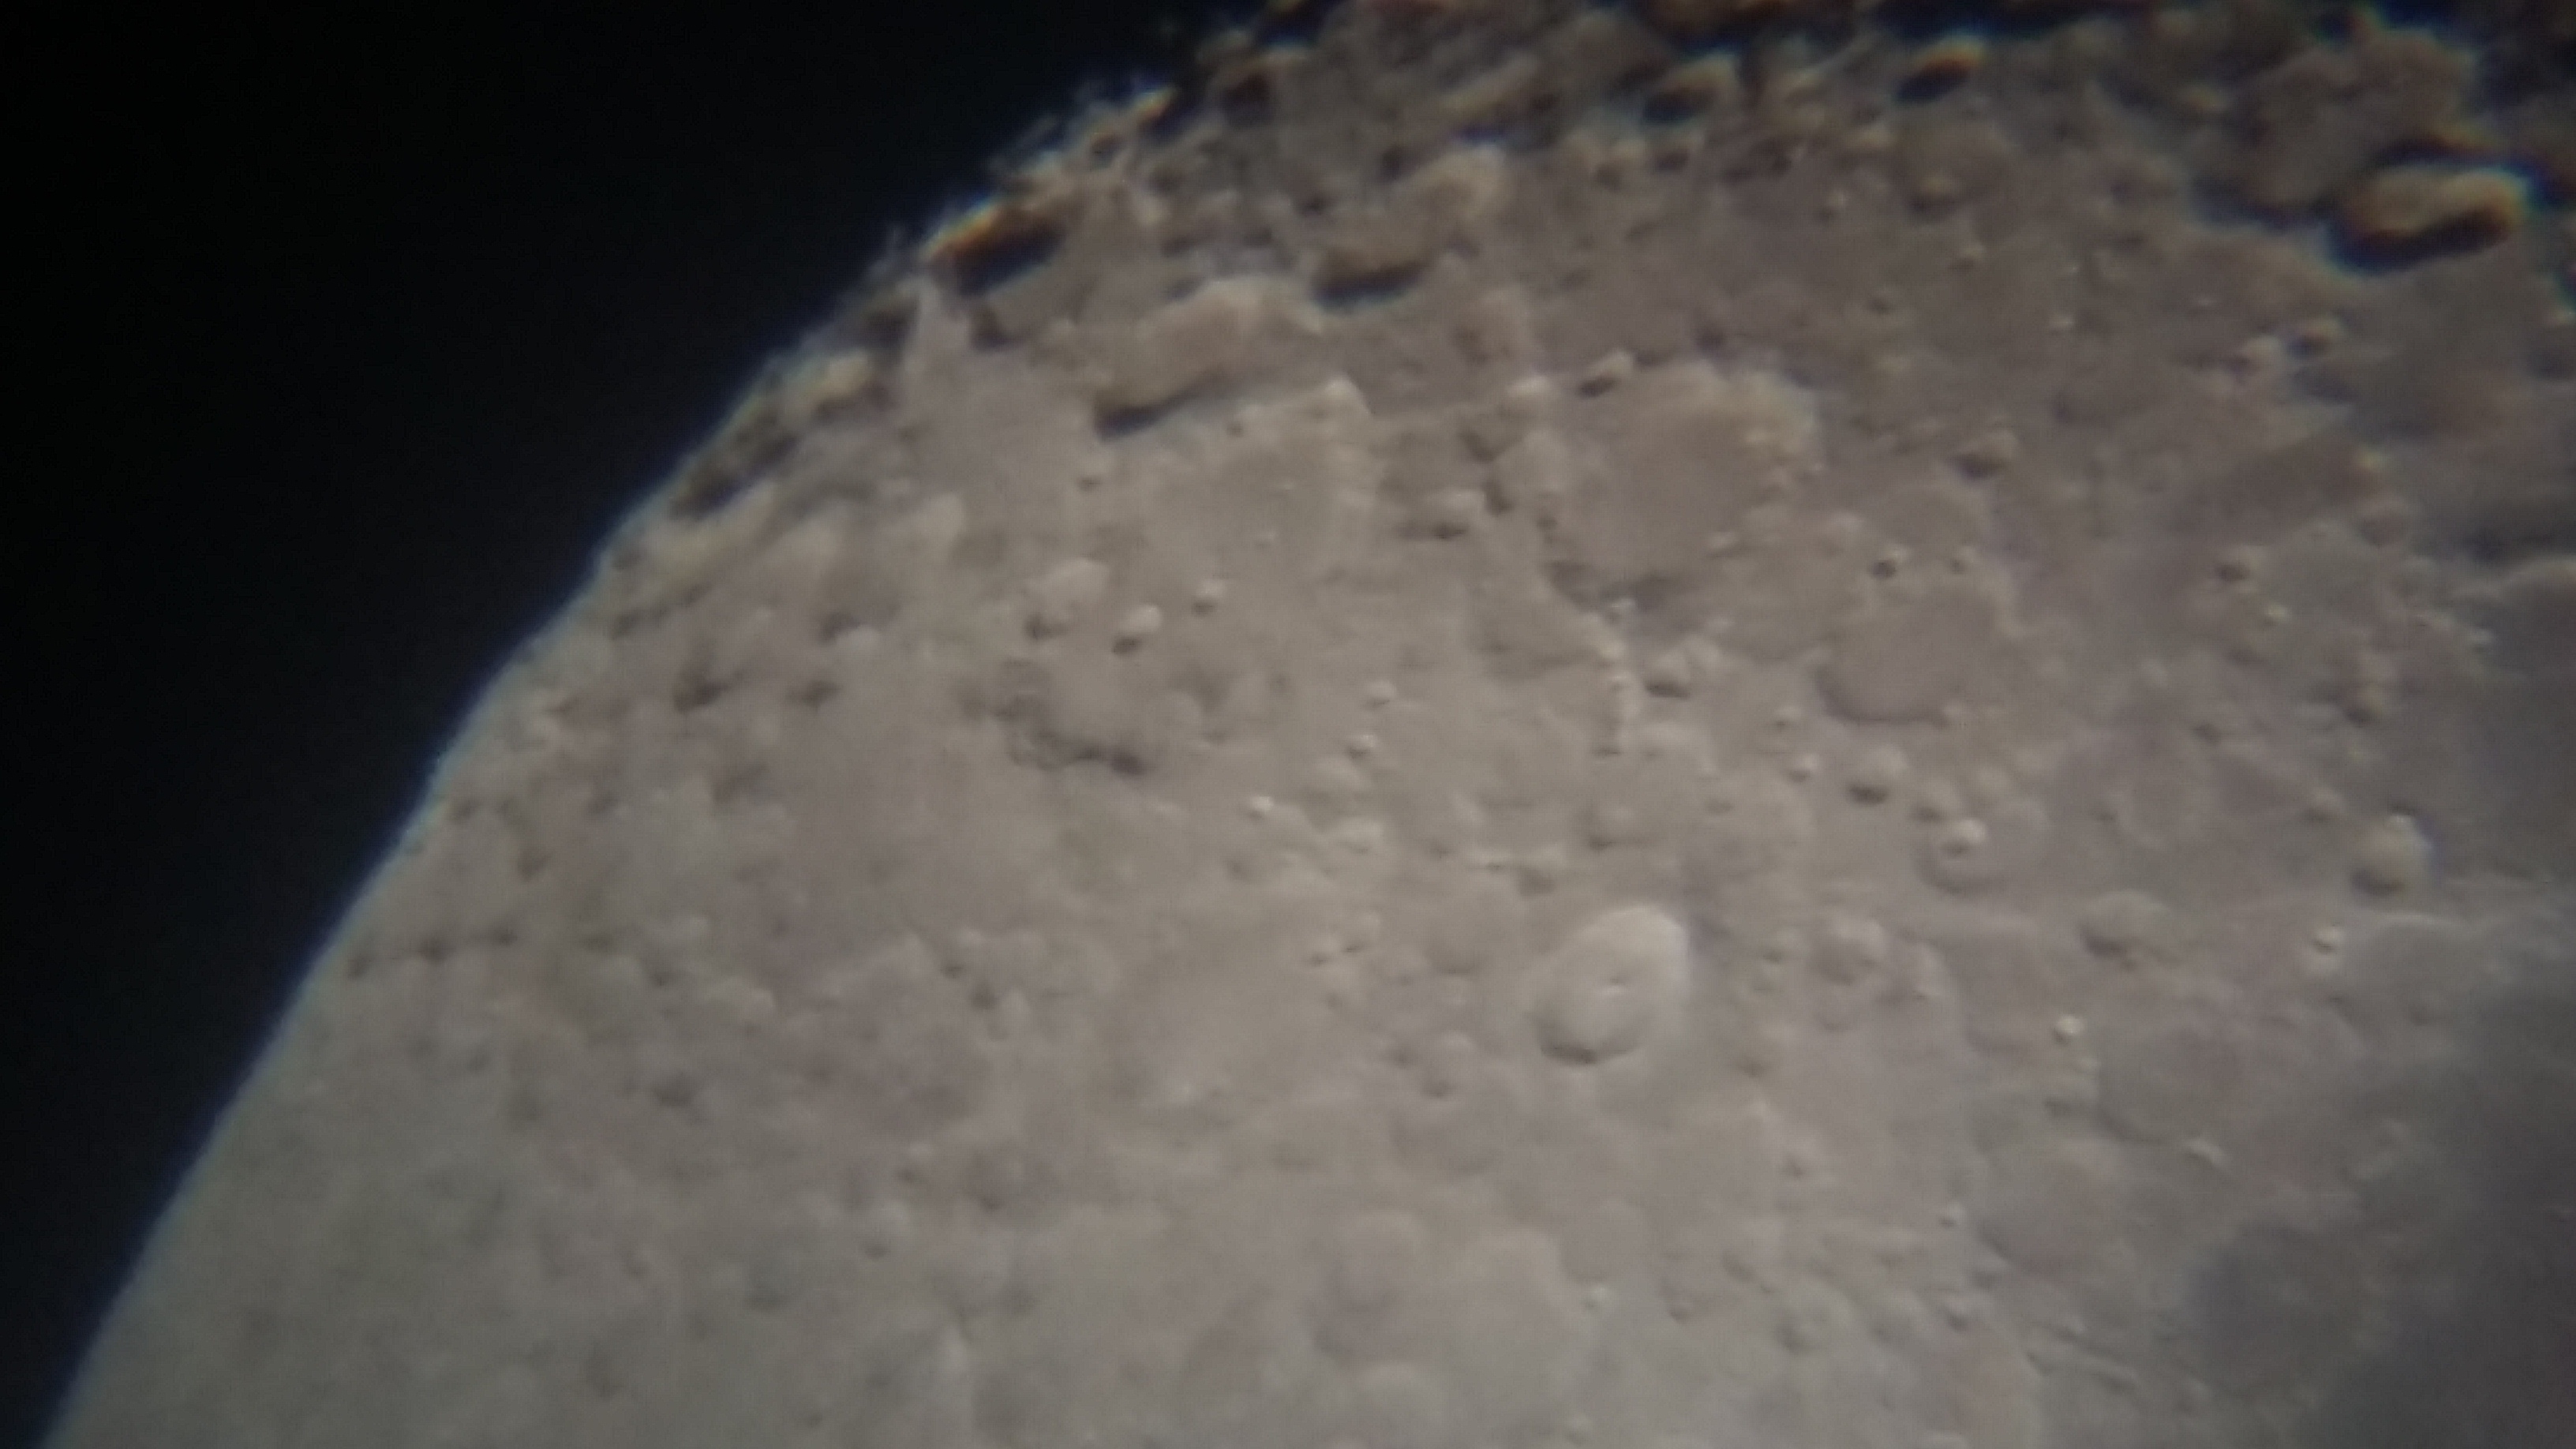 Image de la Lune du 15.02.2019 Gryon Suisse et St Gilles France